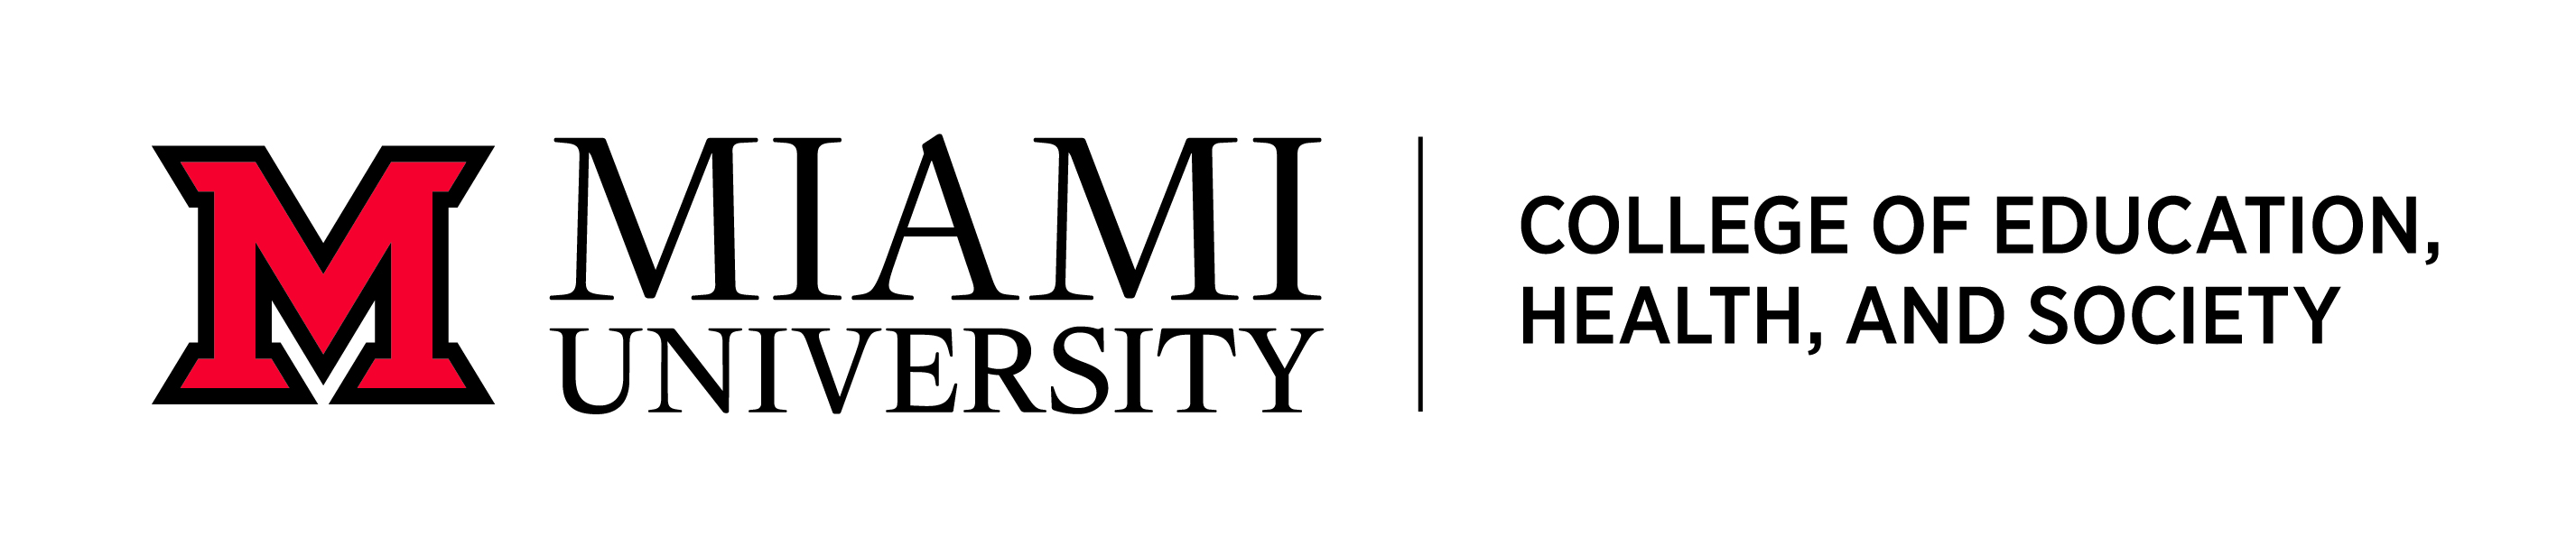 Universidad de miami